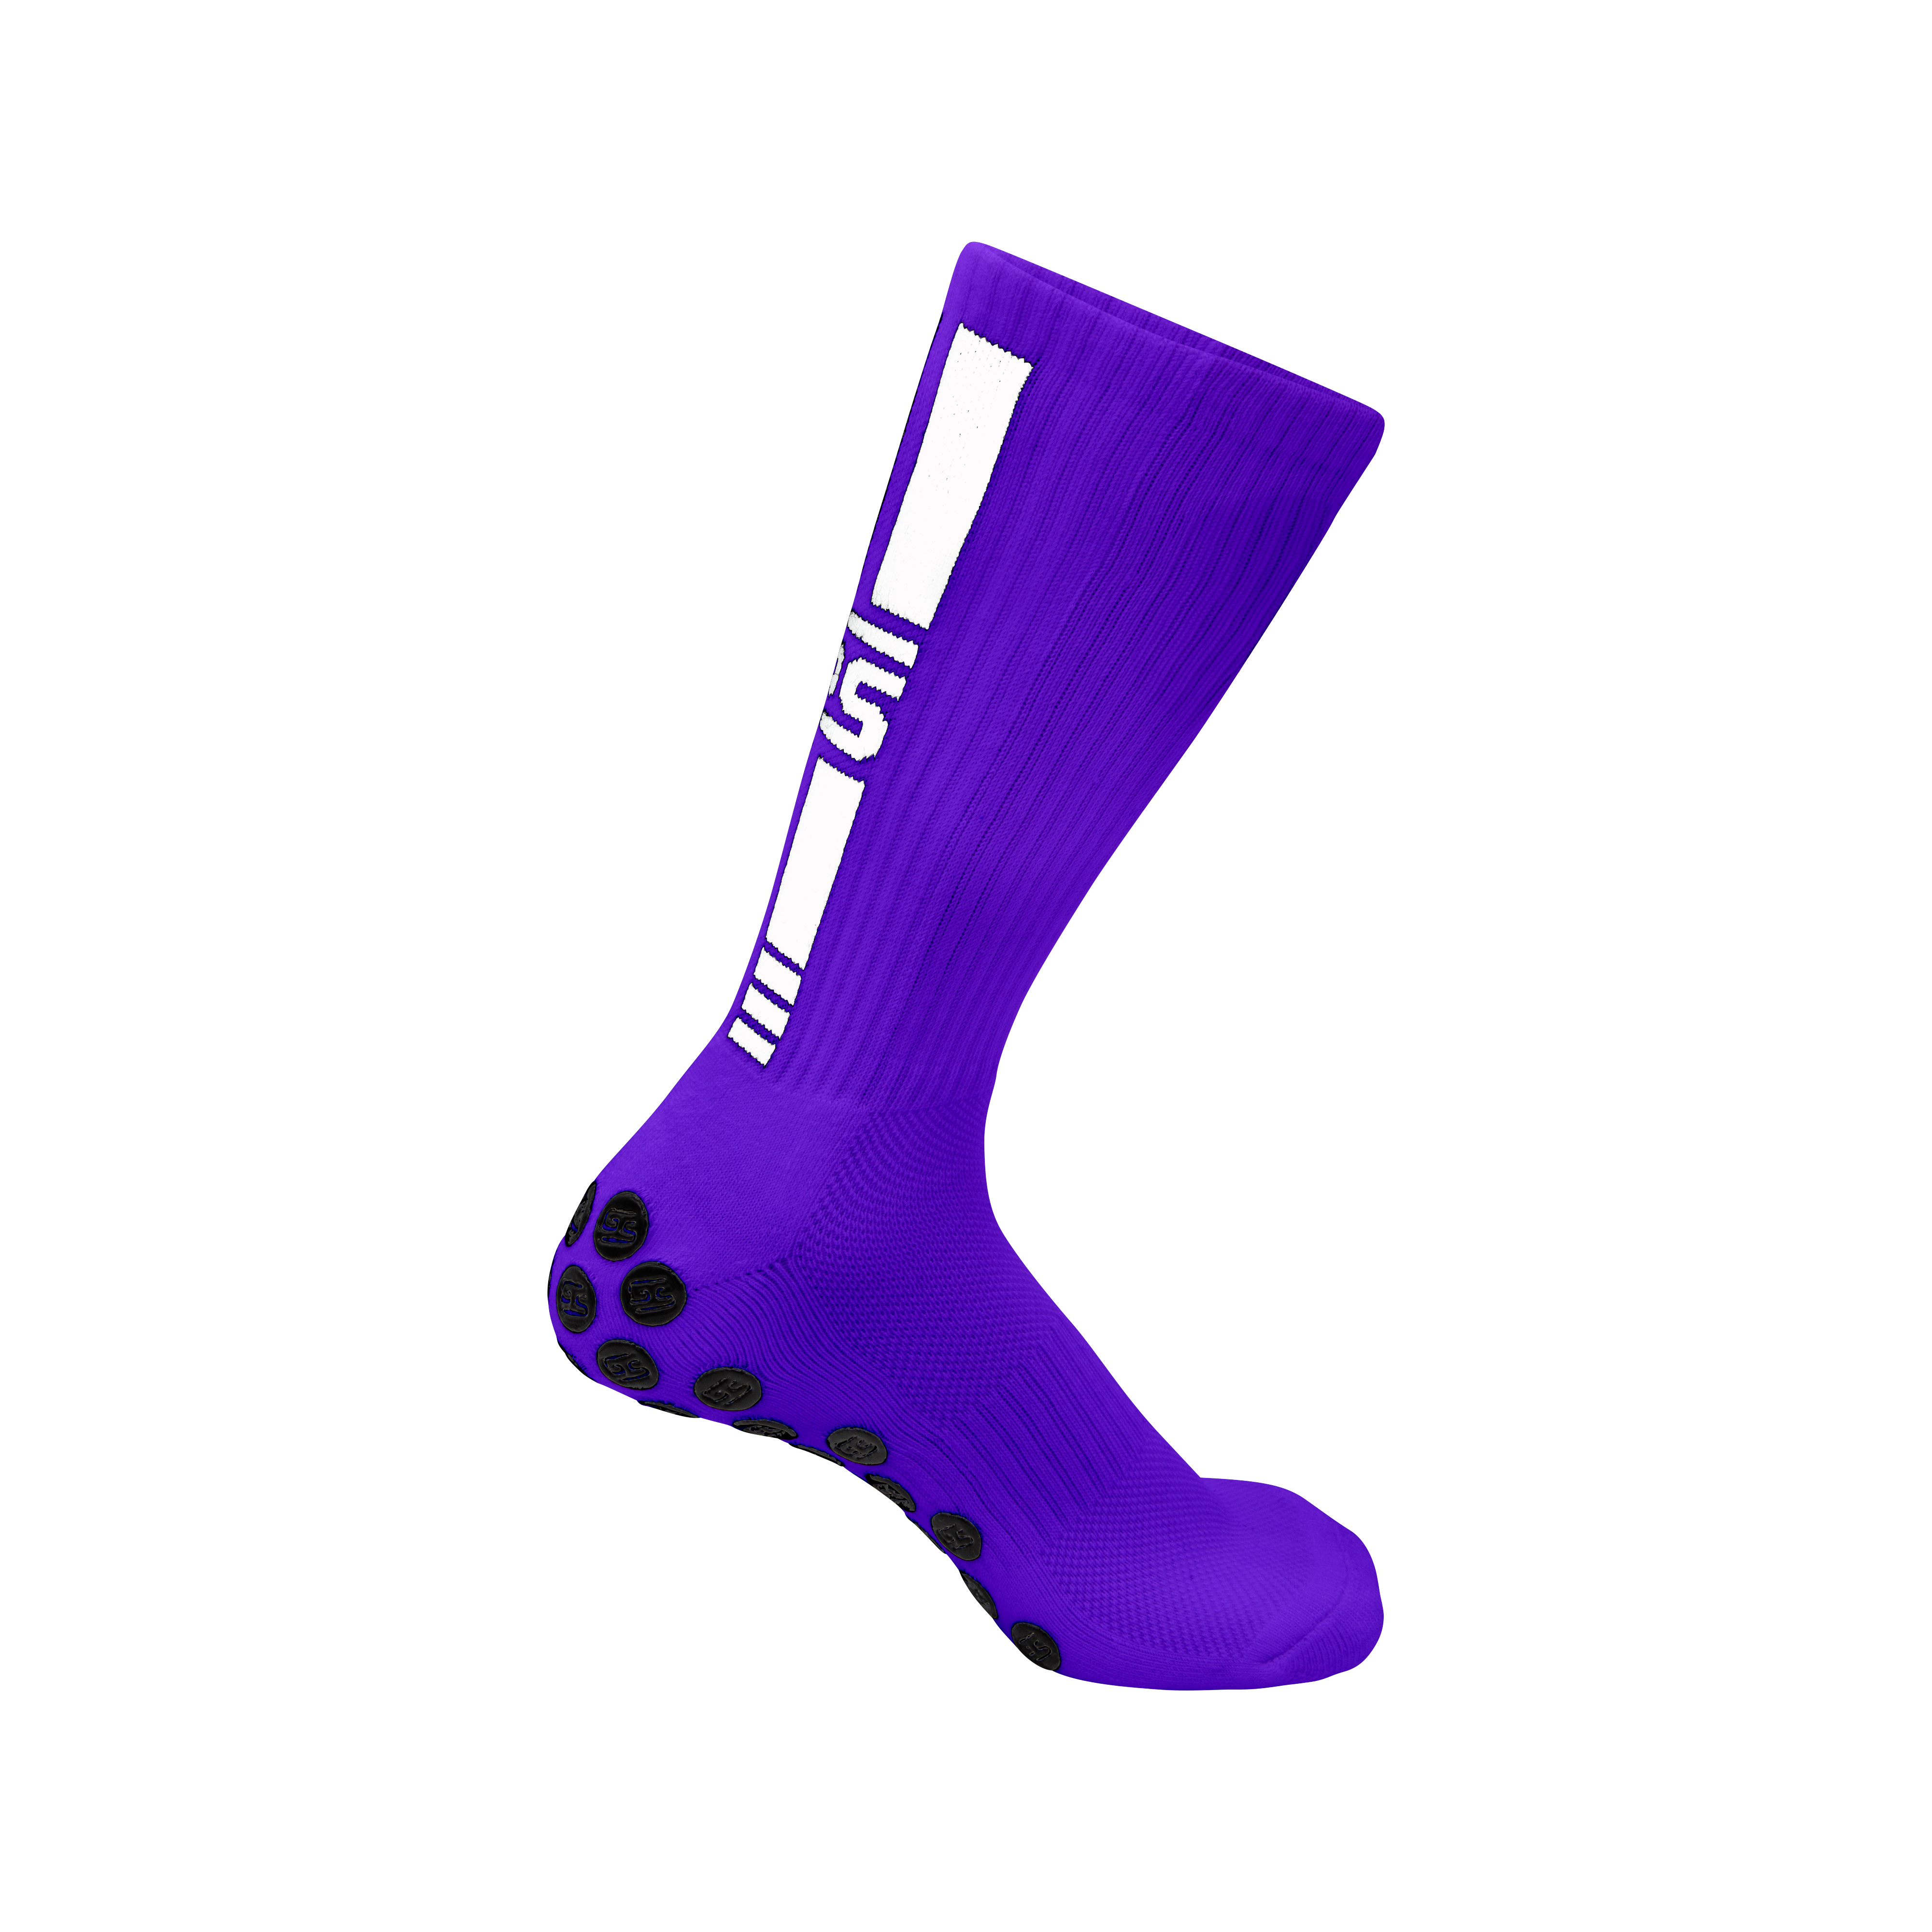 GS - GRIP SOCKS (Purple)